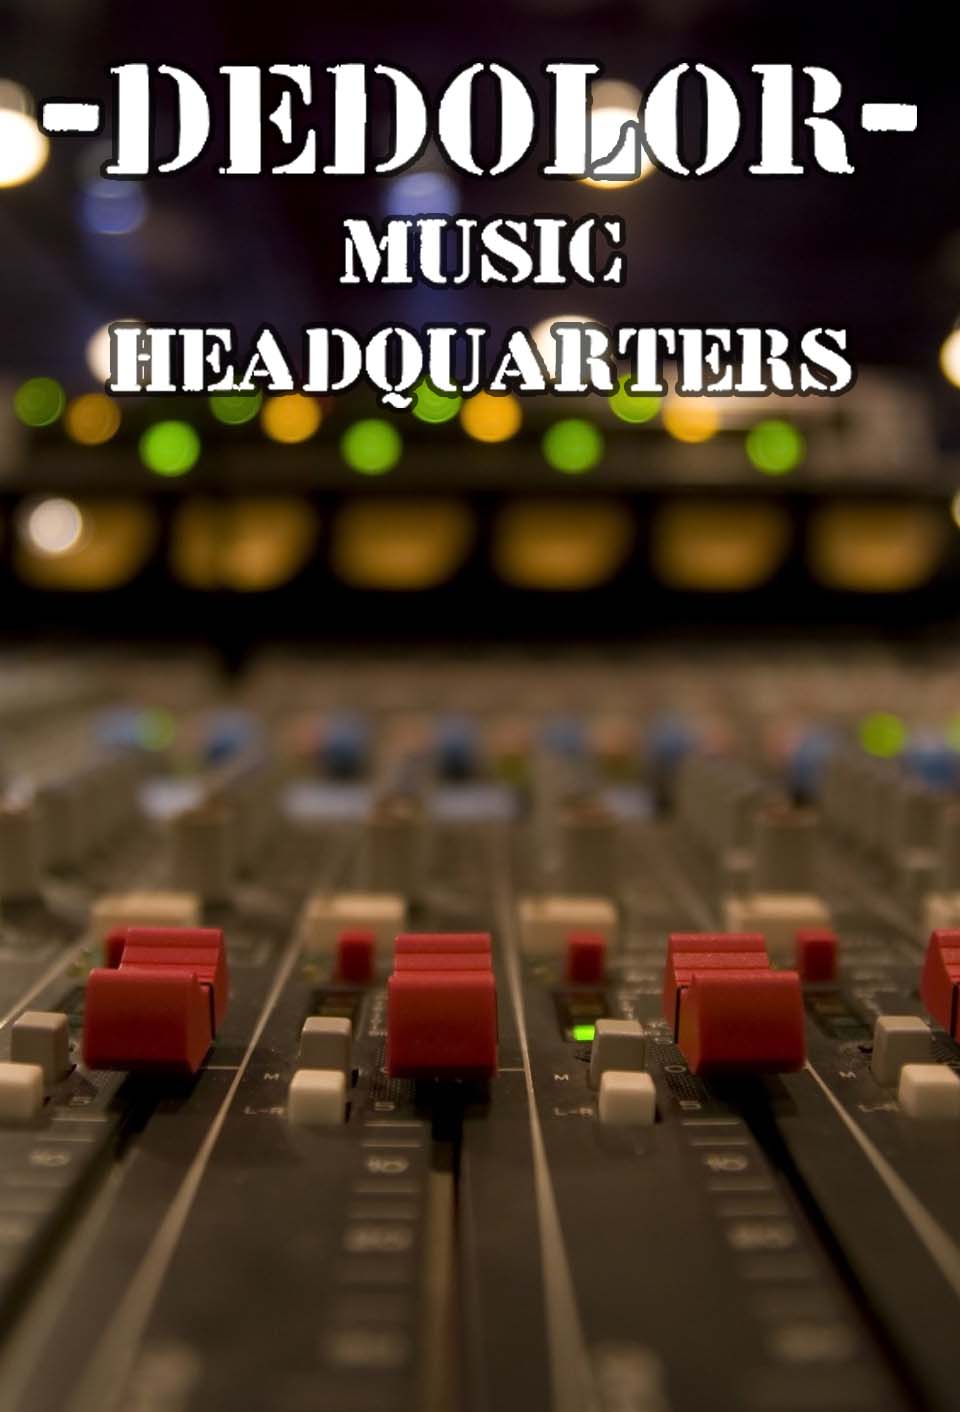 Dedolor Music Headquarter